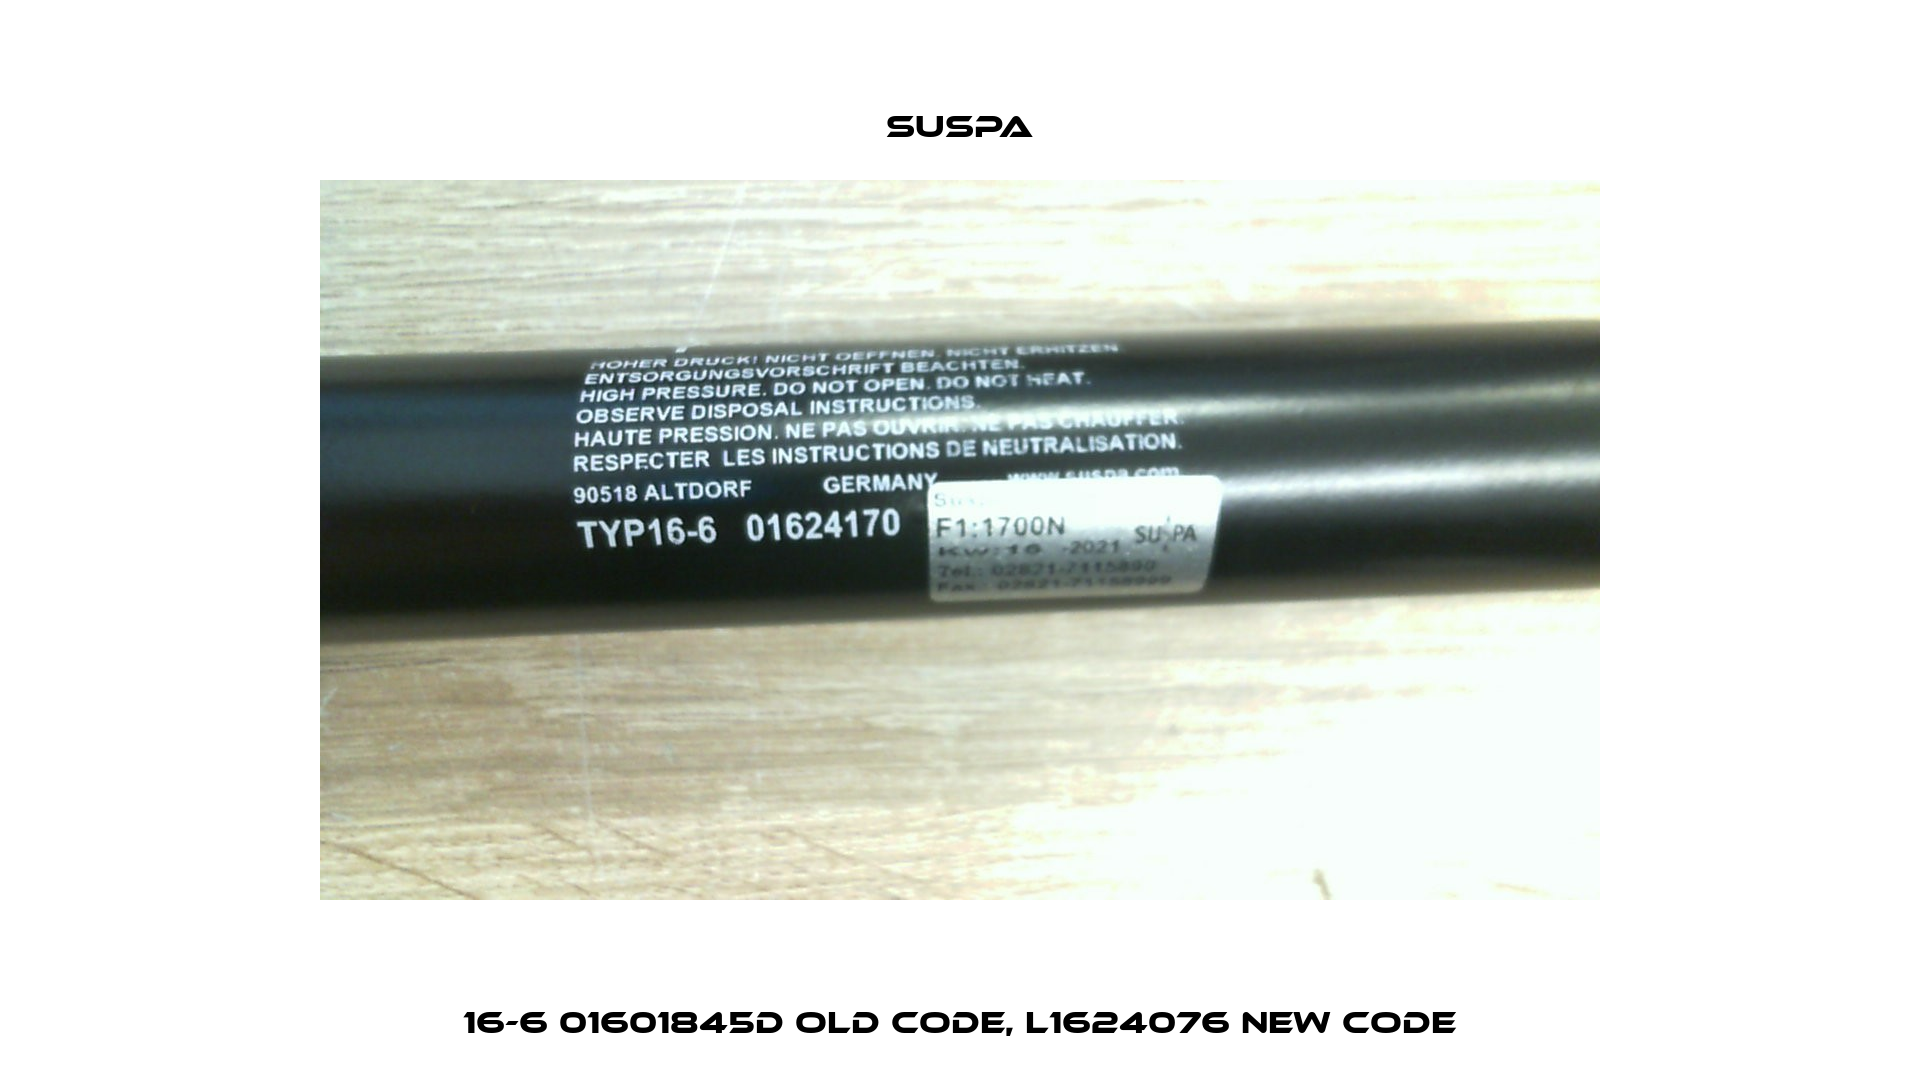 16-6 01601845D old code, L1624076 new code Suspa